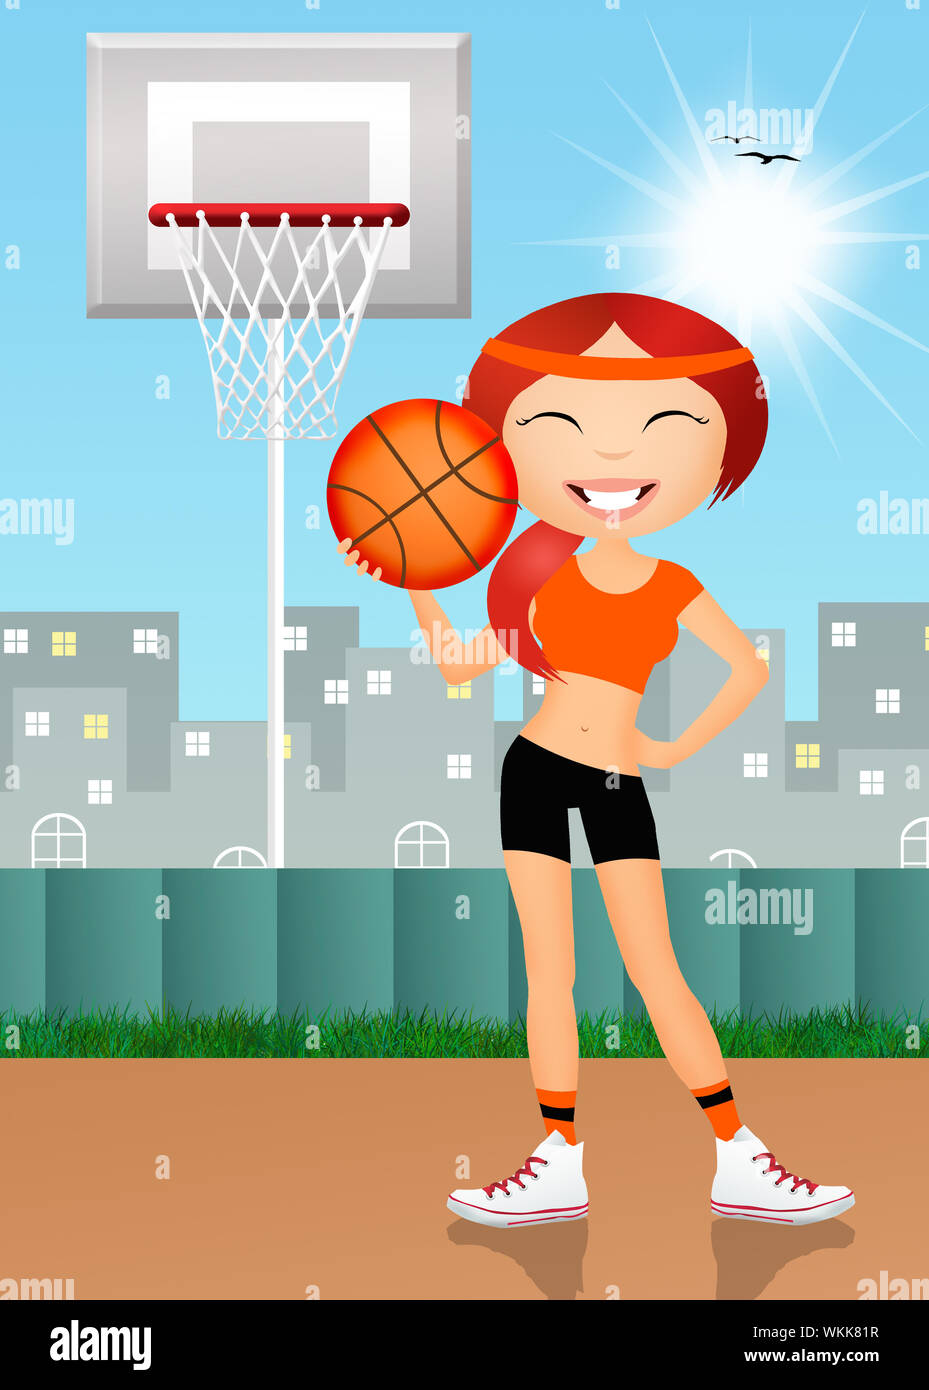 girl playing basketball Stock Photo